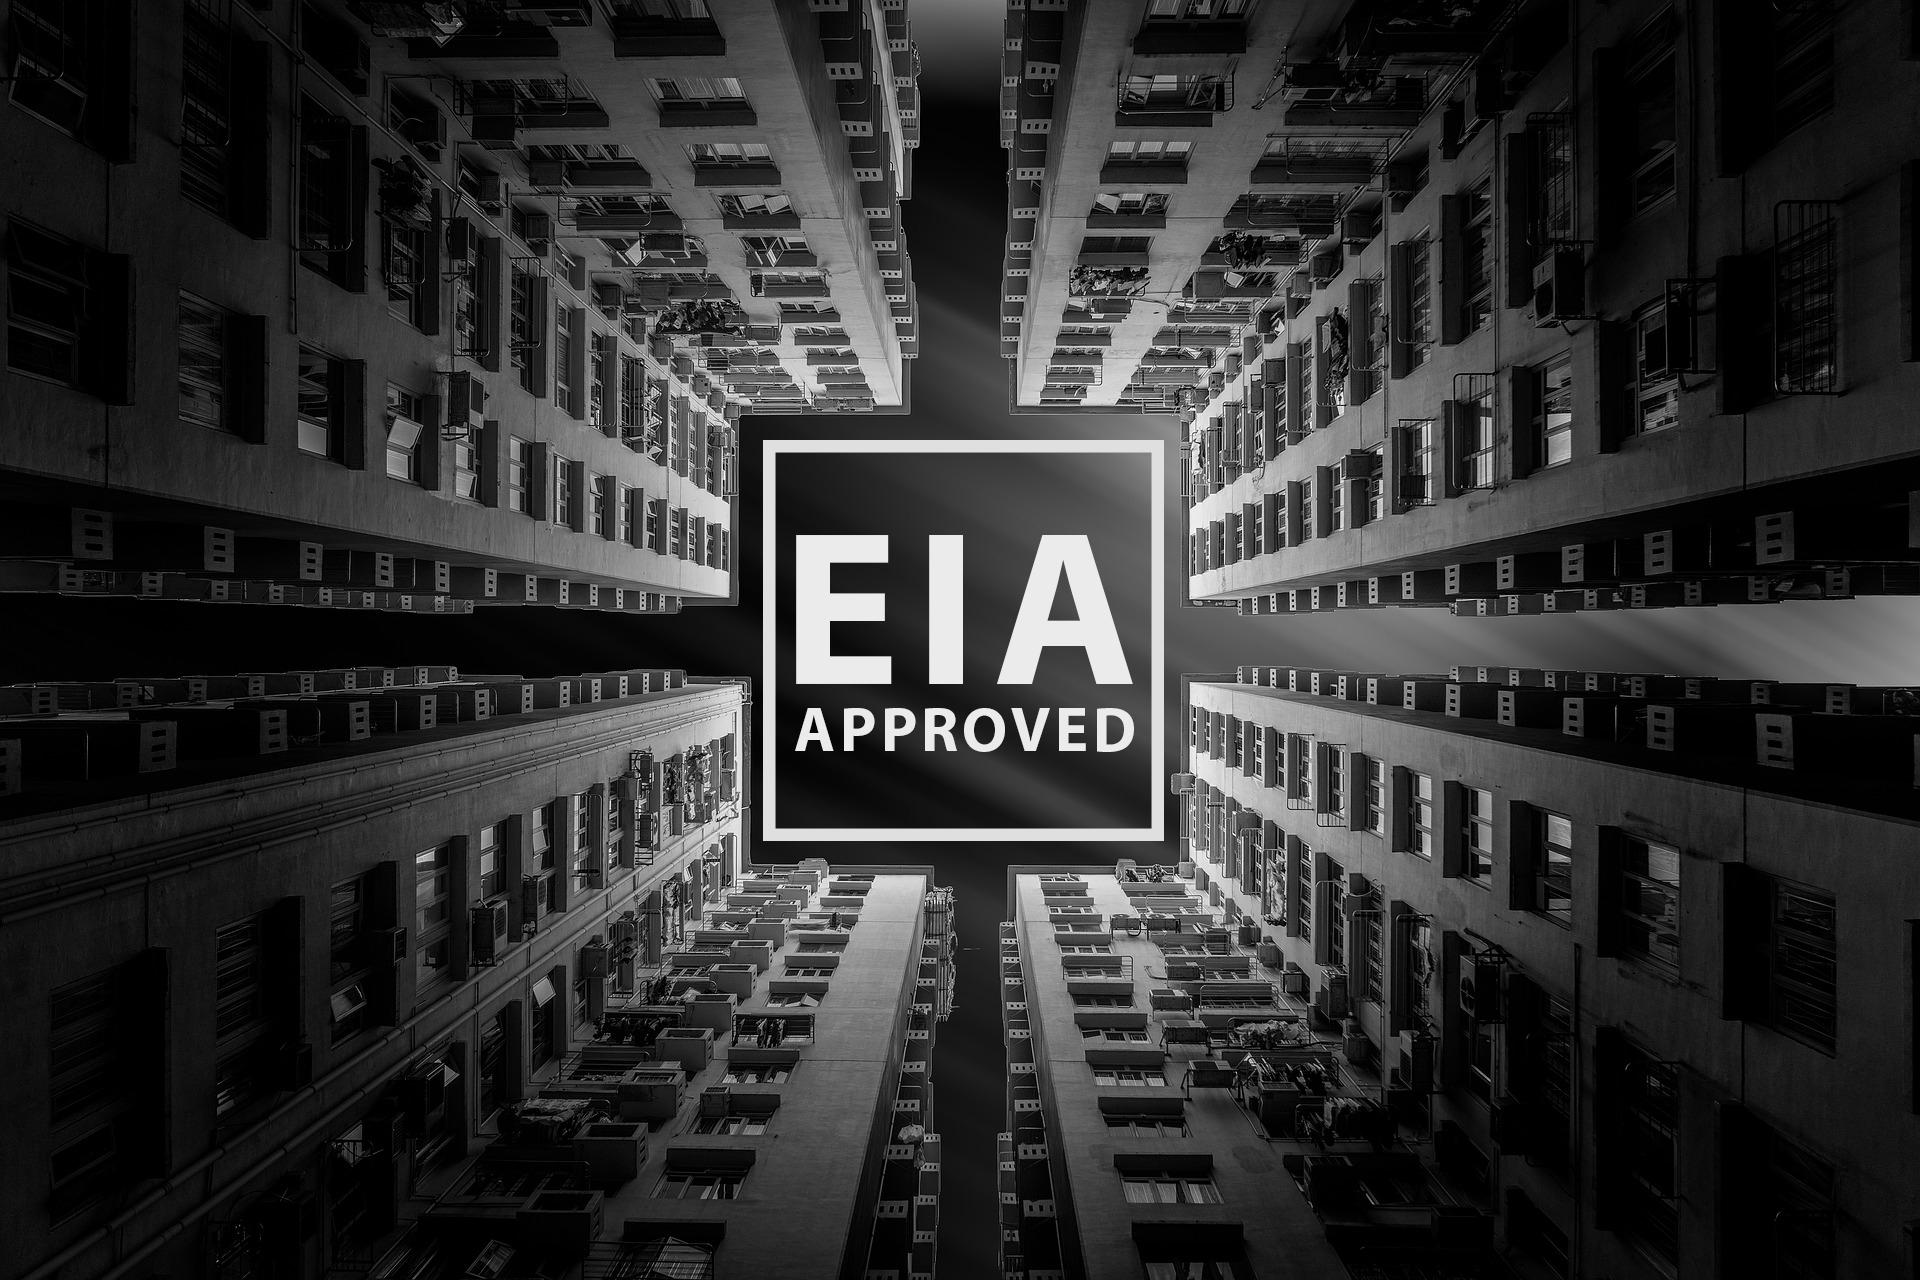 โครงการคอนโดไม่ผ่าน EIA